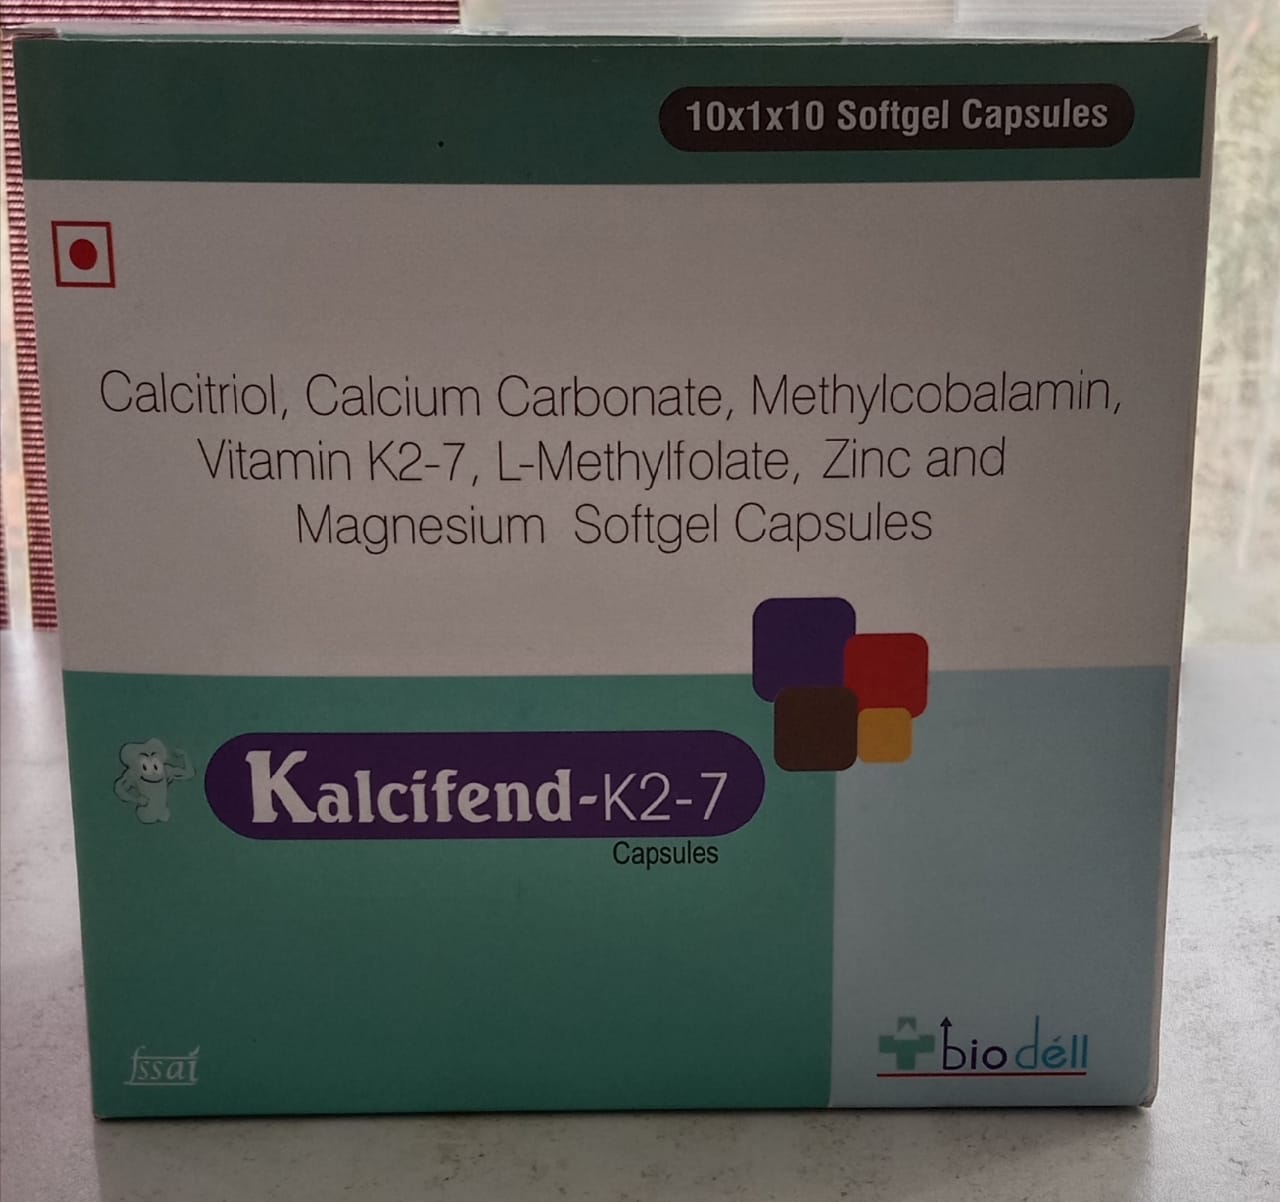 Calcitriol+Calcium Carbonate+Methylcobalamin+Vitamin K2-7+L-Methylfolate+Zinc Softgel Capsules